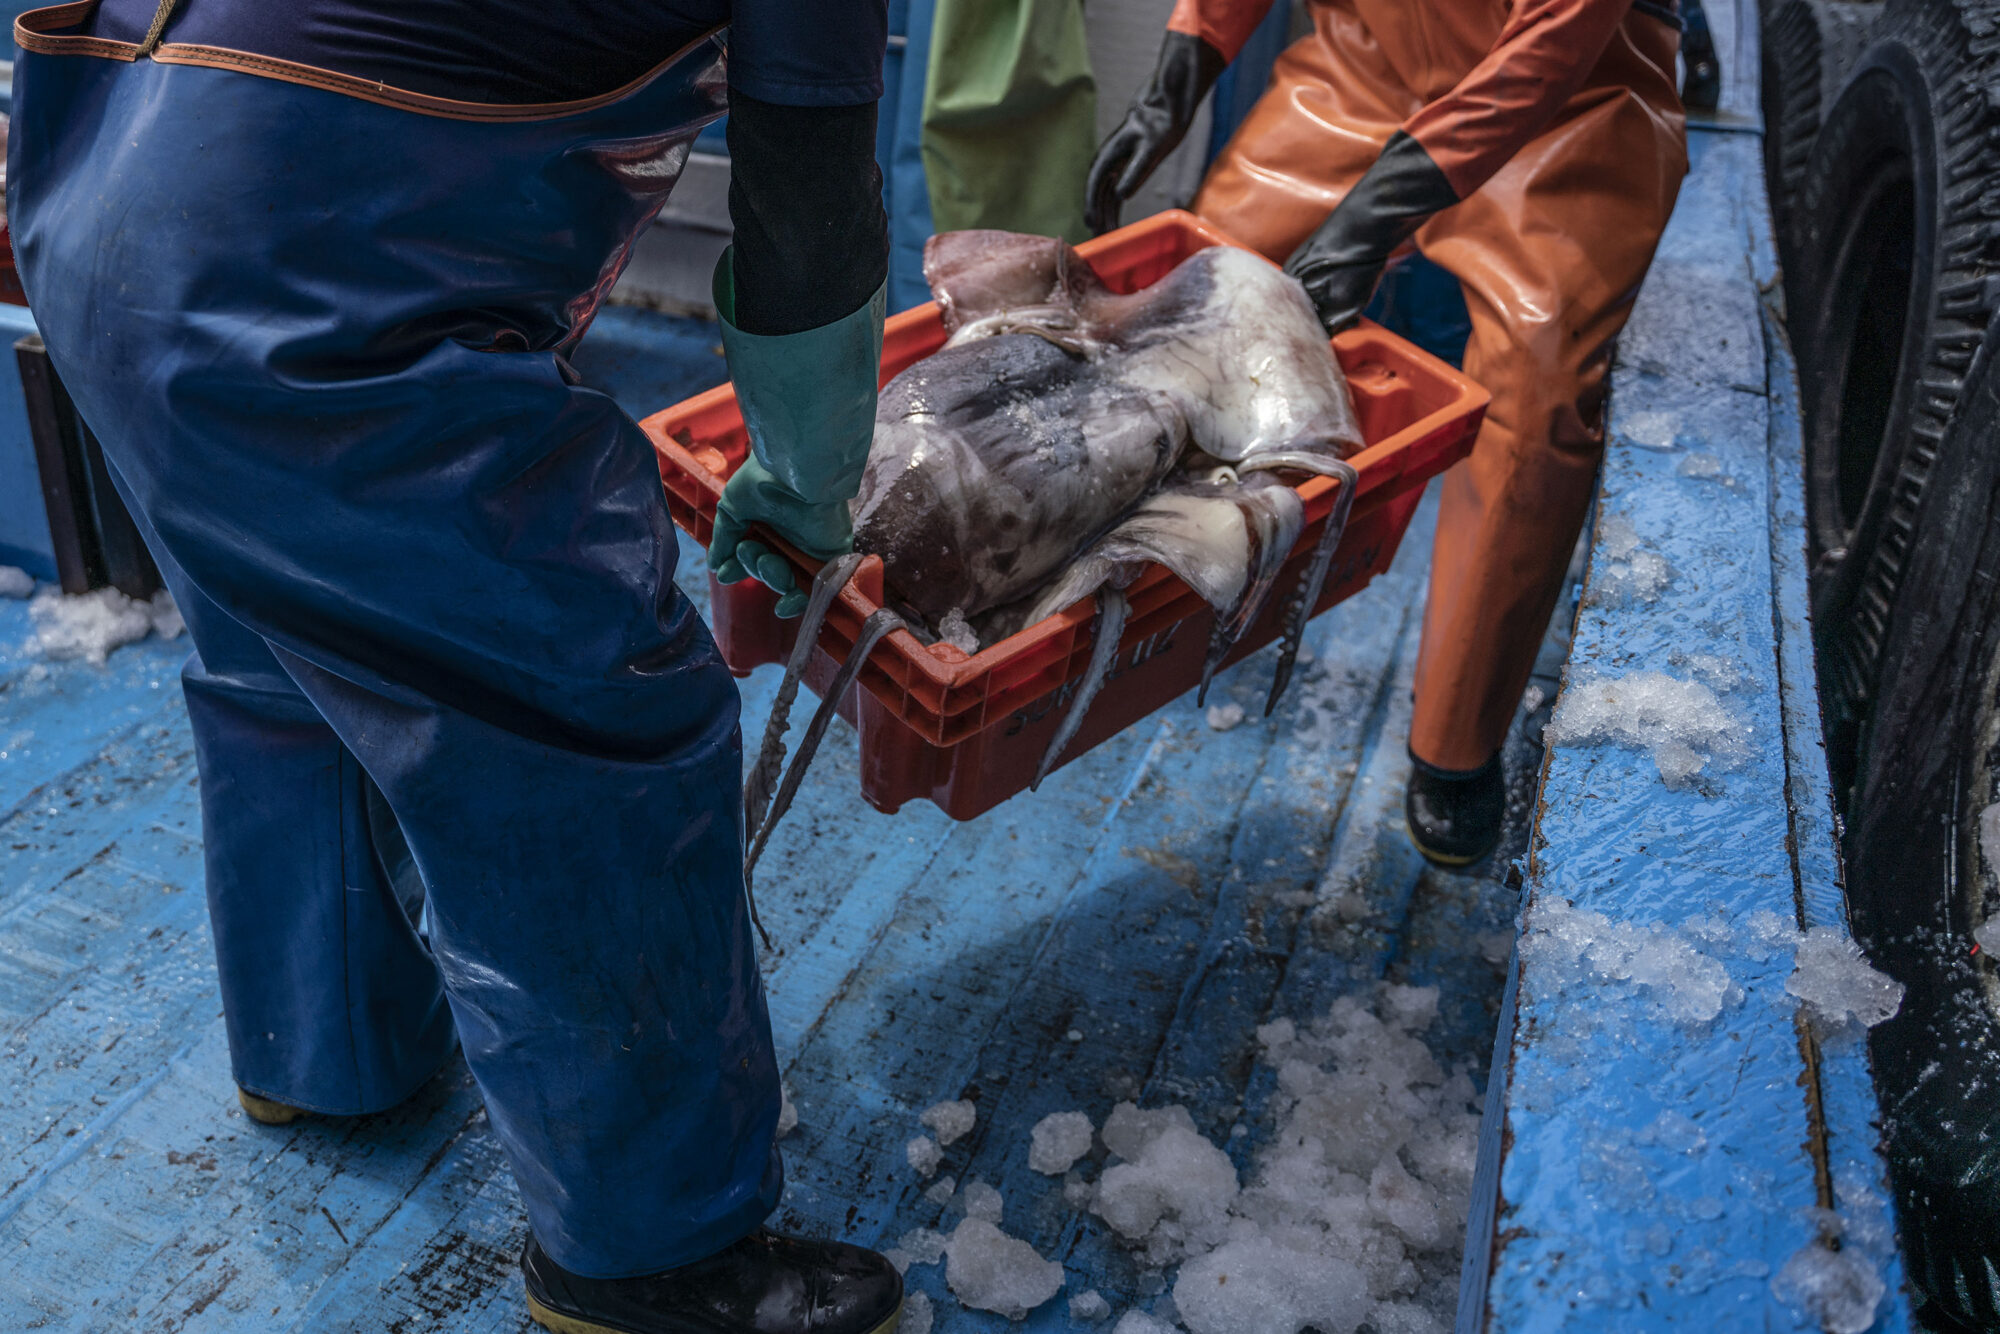 <p>Pescadores locales descargan calamares o pota en el puerto de Paita en el norte de Perú. La pota es una exportación importante para el país, pero los pescadores de la región han visto sus capturas cada vez más amenazadas por embarcaciones ilegales y no reguladas que operan en las aguas del Pacífico sureste, lo que genera preocupación sobre la sostenibilidad en la región. (Imagen: Leslie Moreno Custodio)</p>